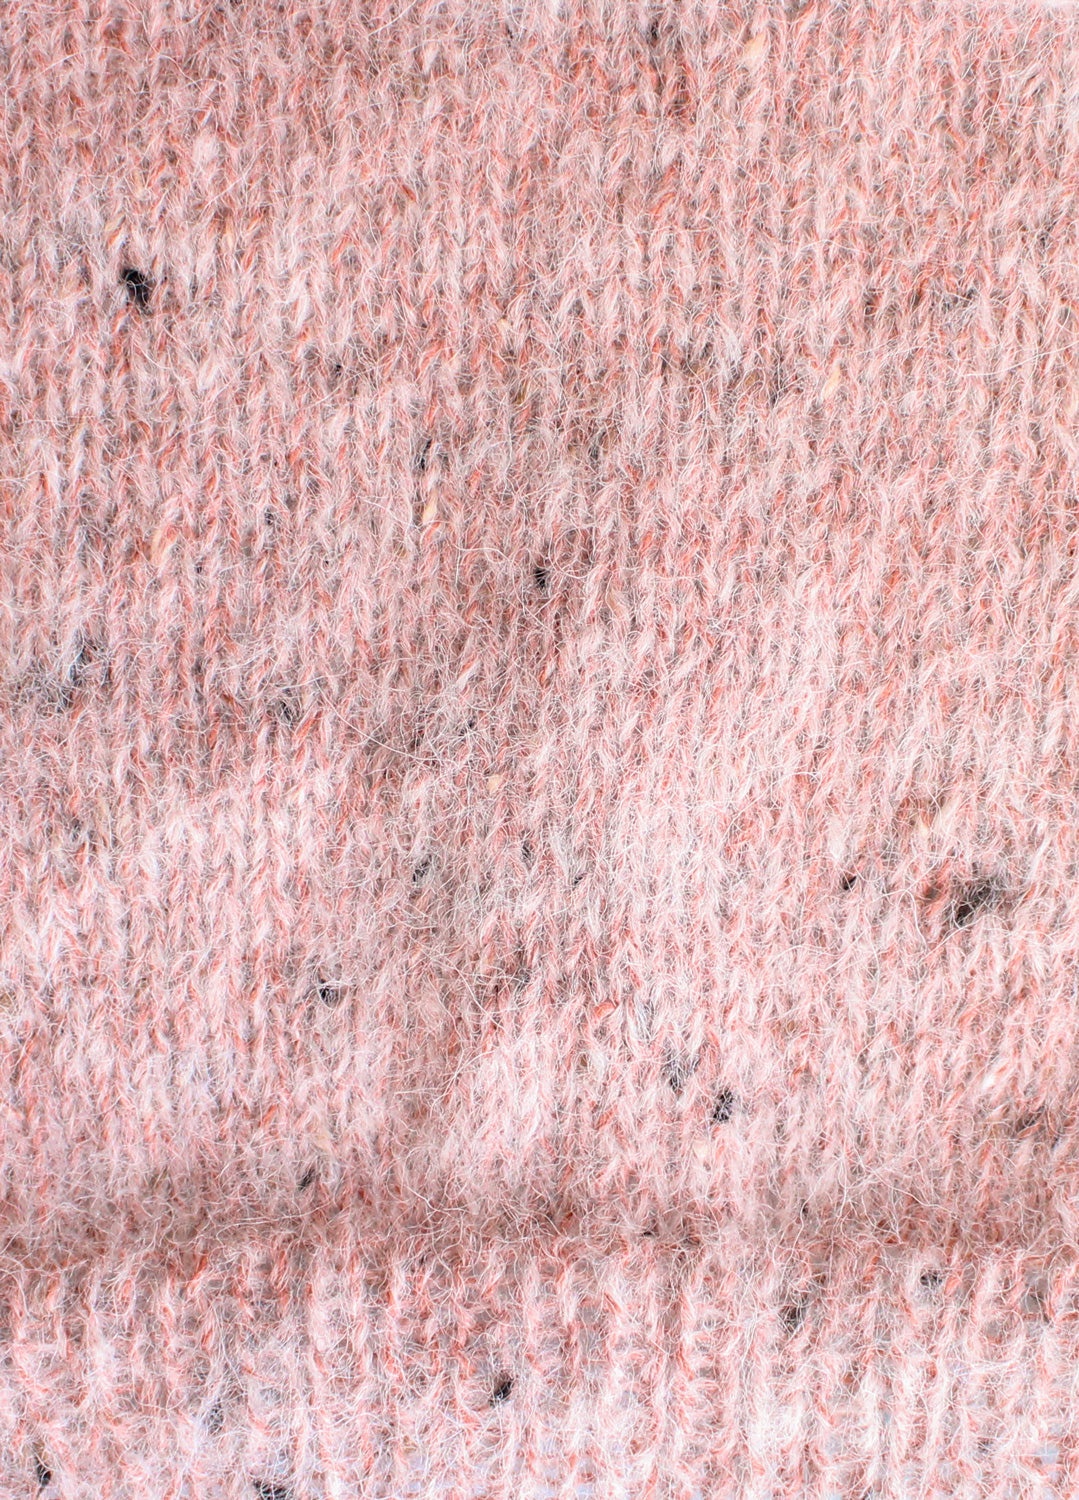 The Fuzzy Yarn Marbled Ochre